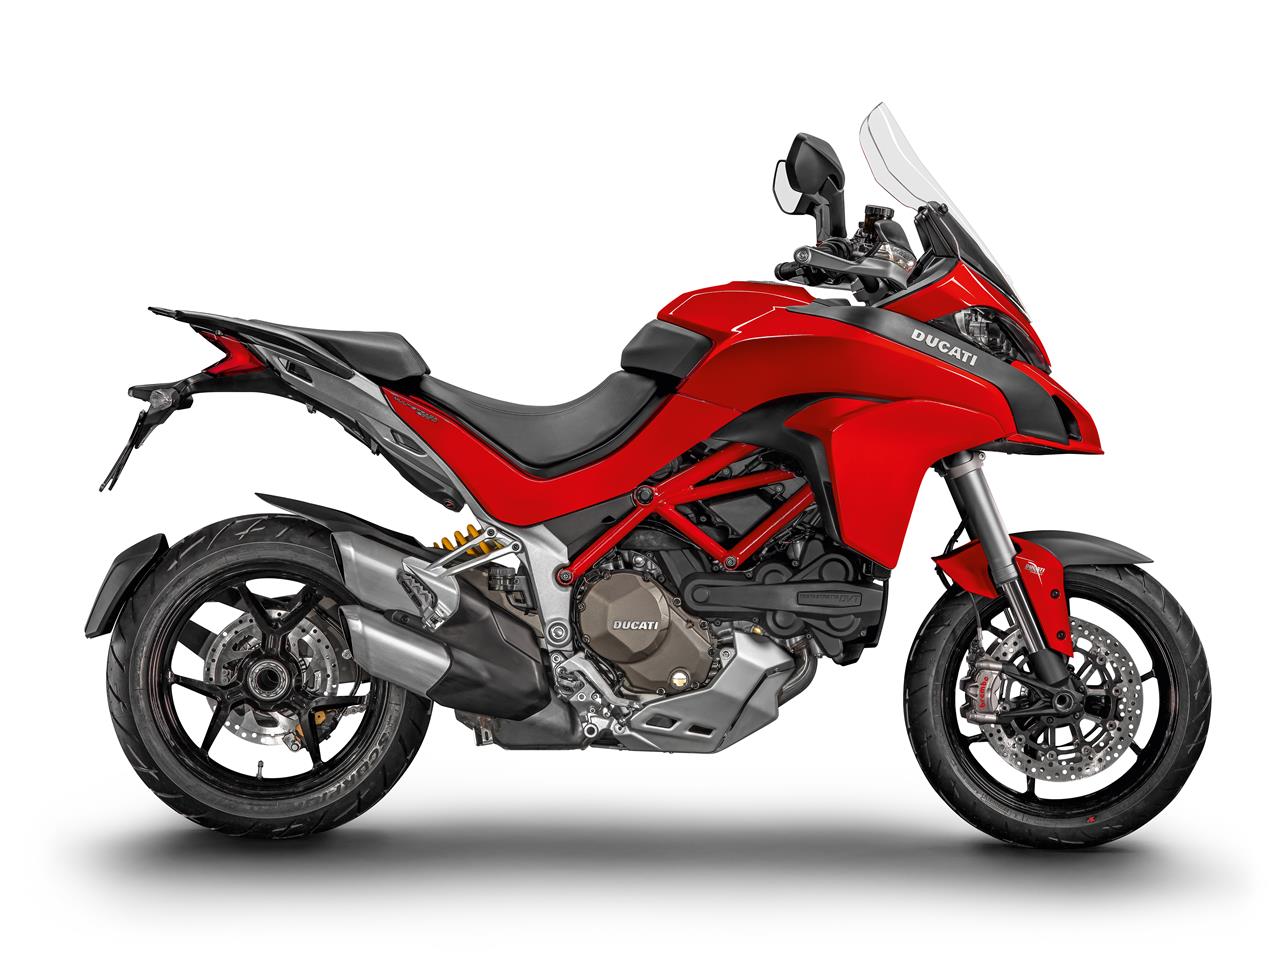 Moto dell’anno 2015 alla Ducati - image 001192-000021284 on https://moto.motori.net